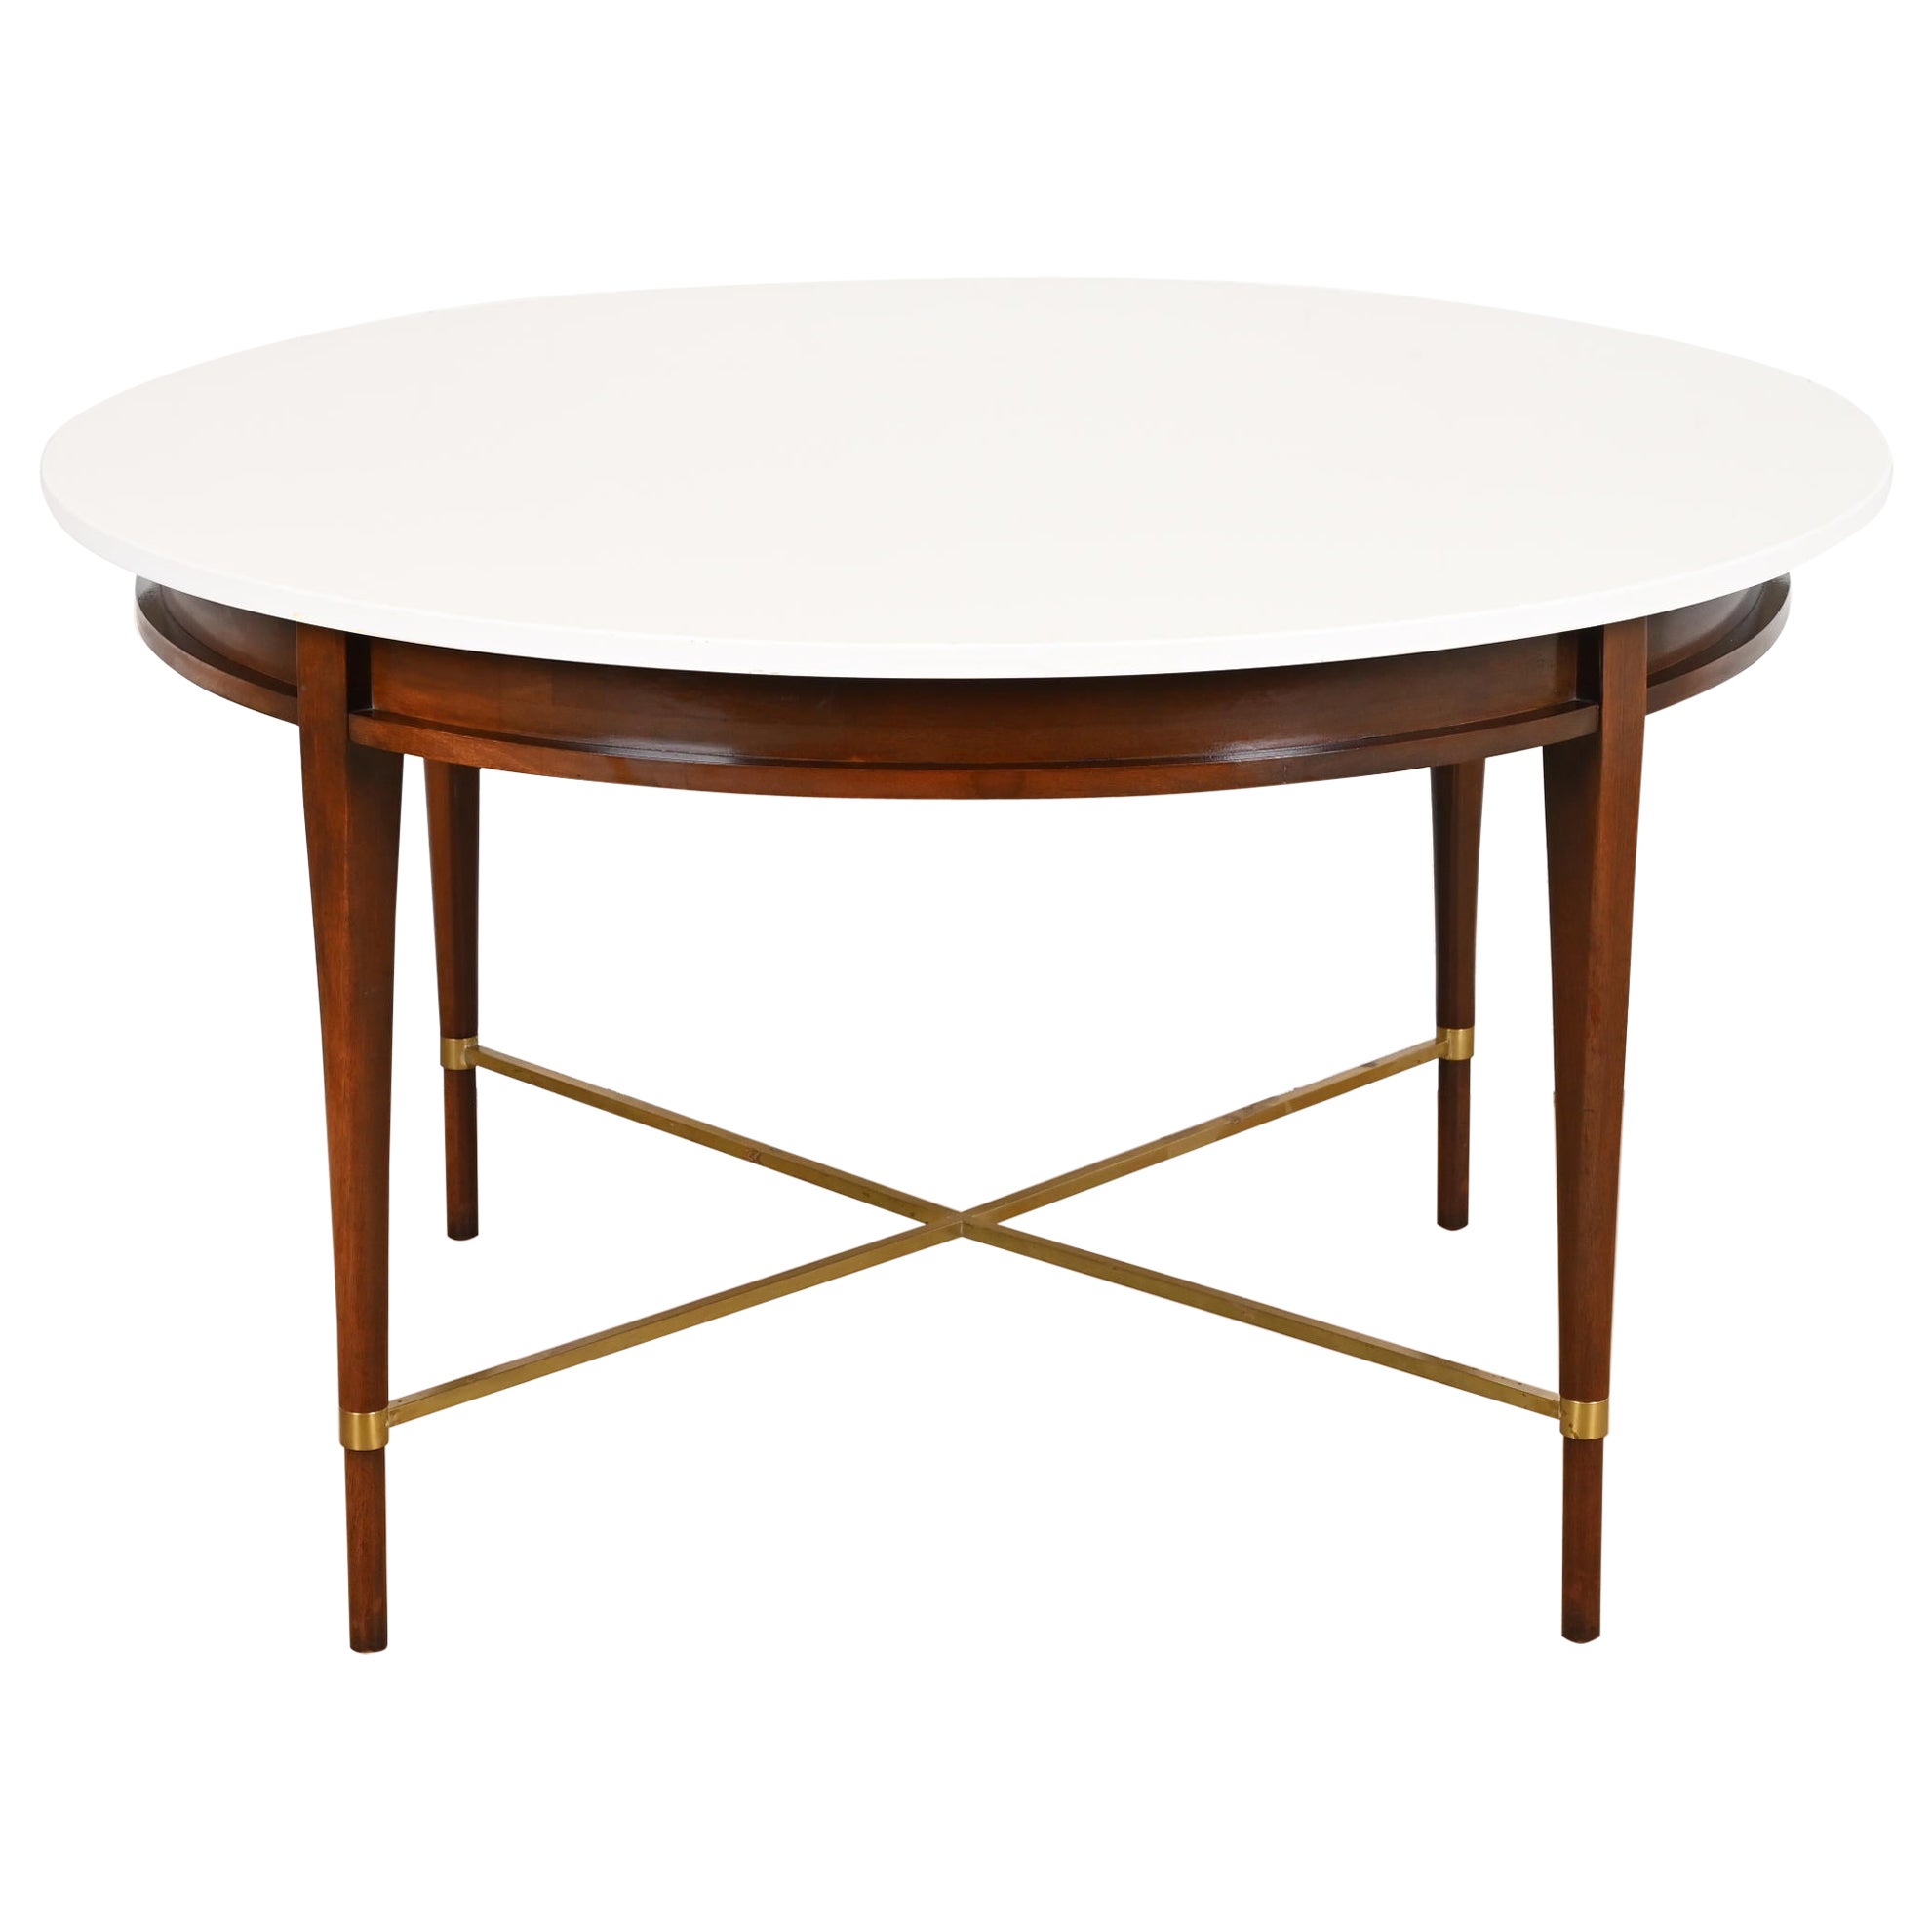 Runder Esstisch oder Spieltisch aus der Paul McCobb Irwin Kollektion aus Mahagoni und Messing